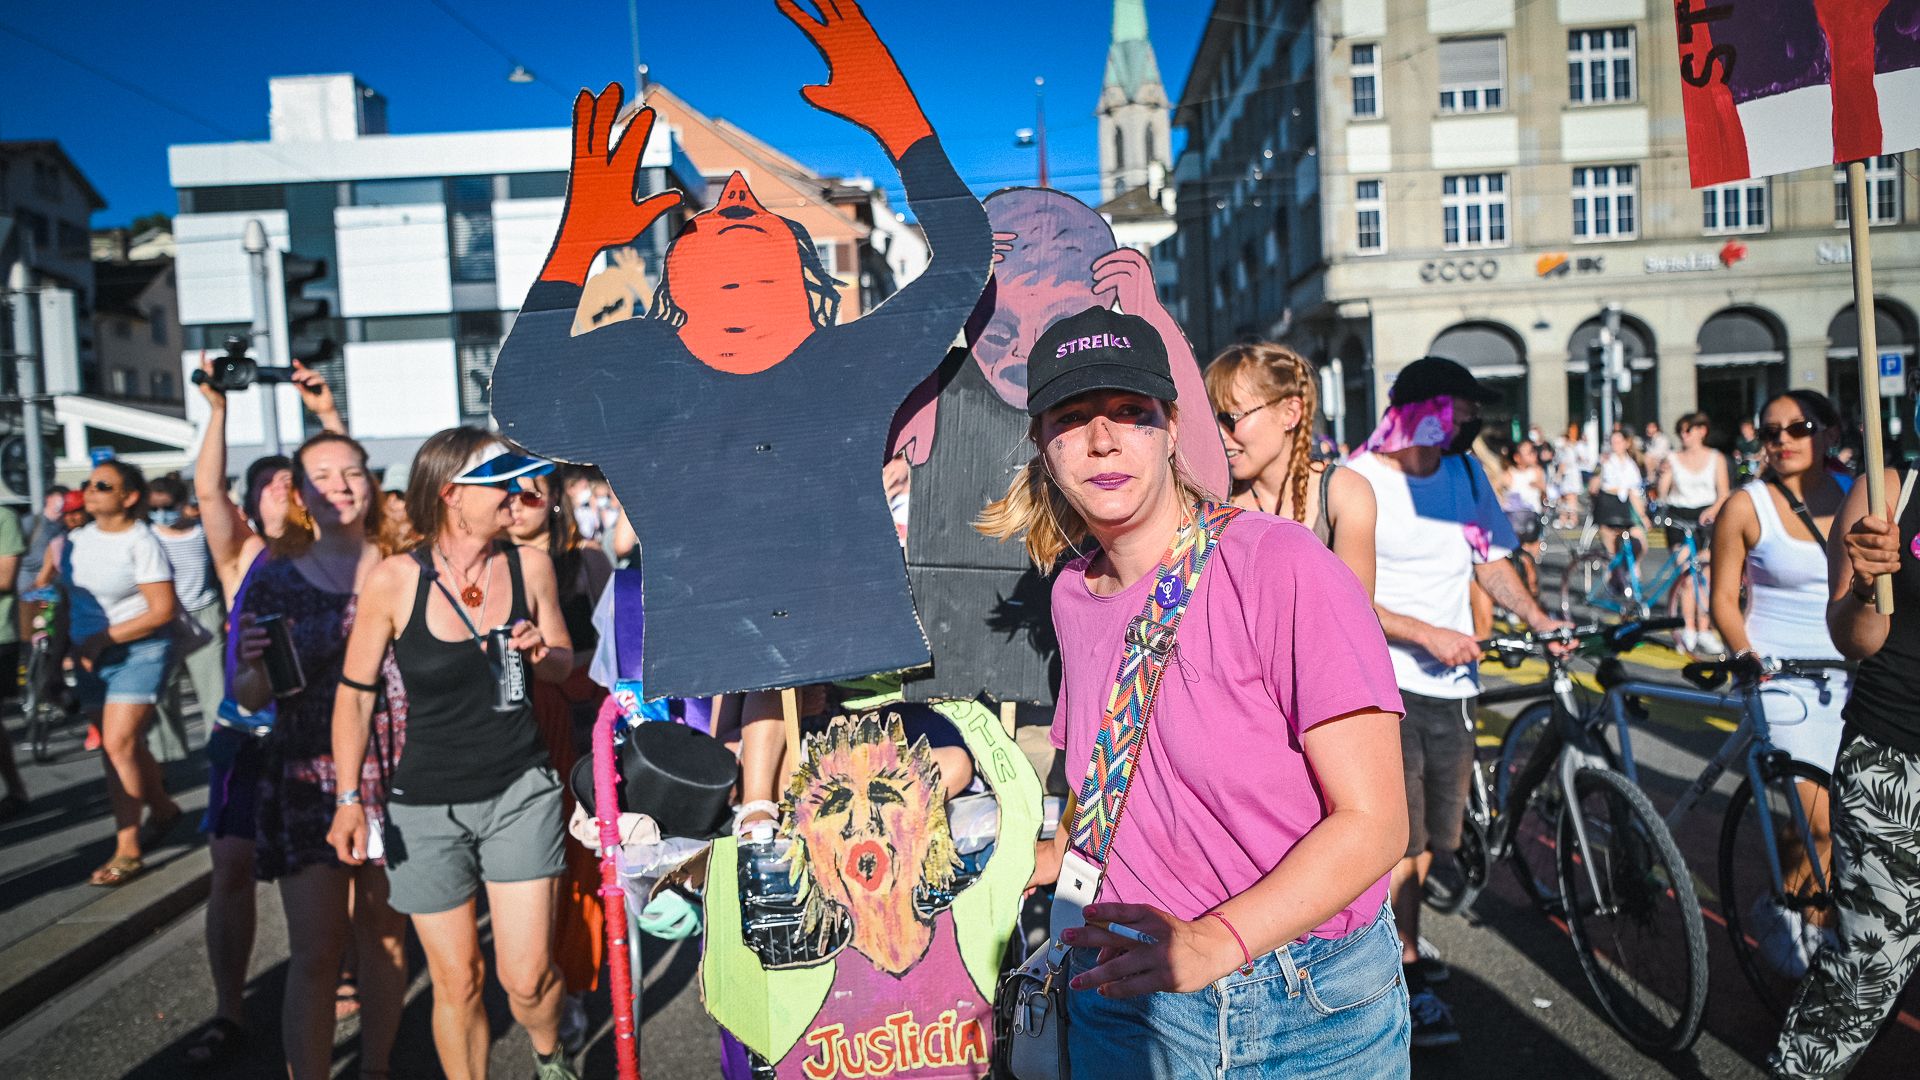 Foto von der Demonstration am 14.6. in Zürich, die Klageweiber, aus Pappe gefärtigte Figuren von schreienden und klagenden Frauenfiguren werden von mehreren FLINTA transportiert.